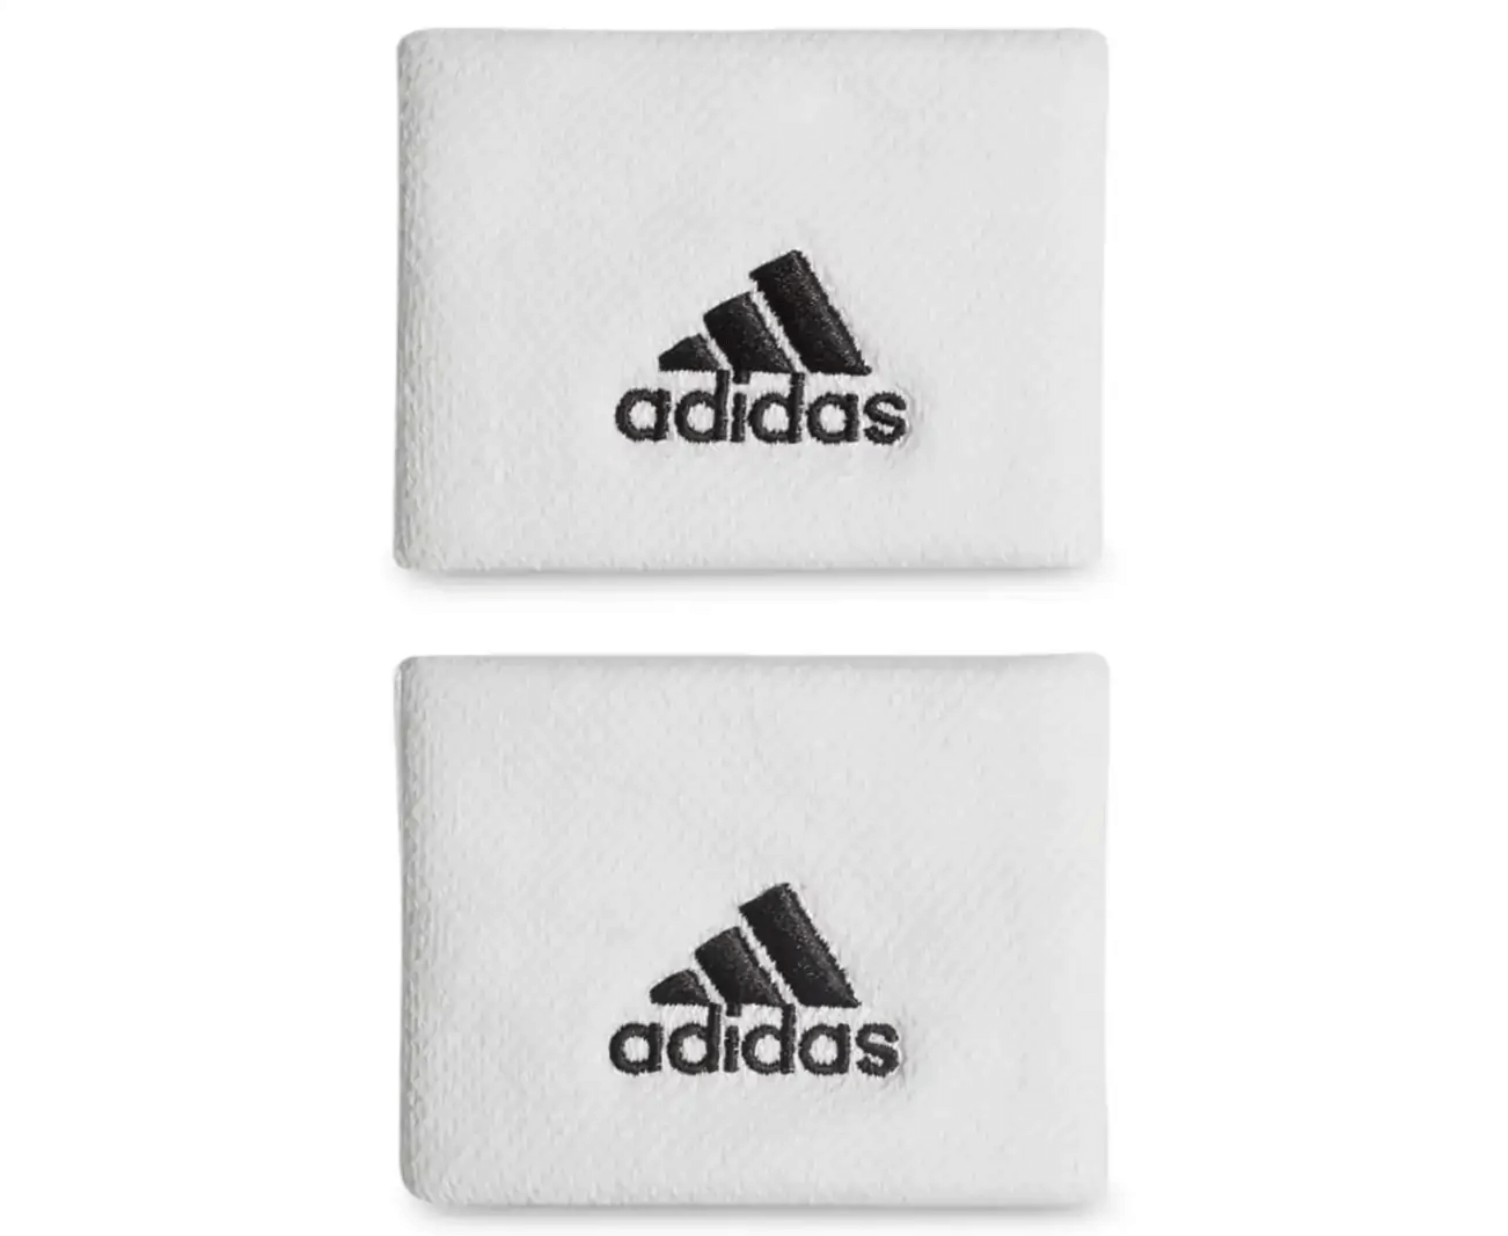 Adidas Unisex Size Small Tennis Wristband Pair - White/Black